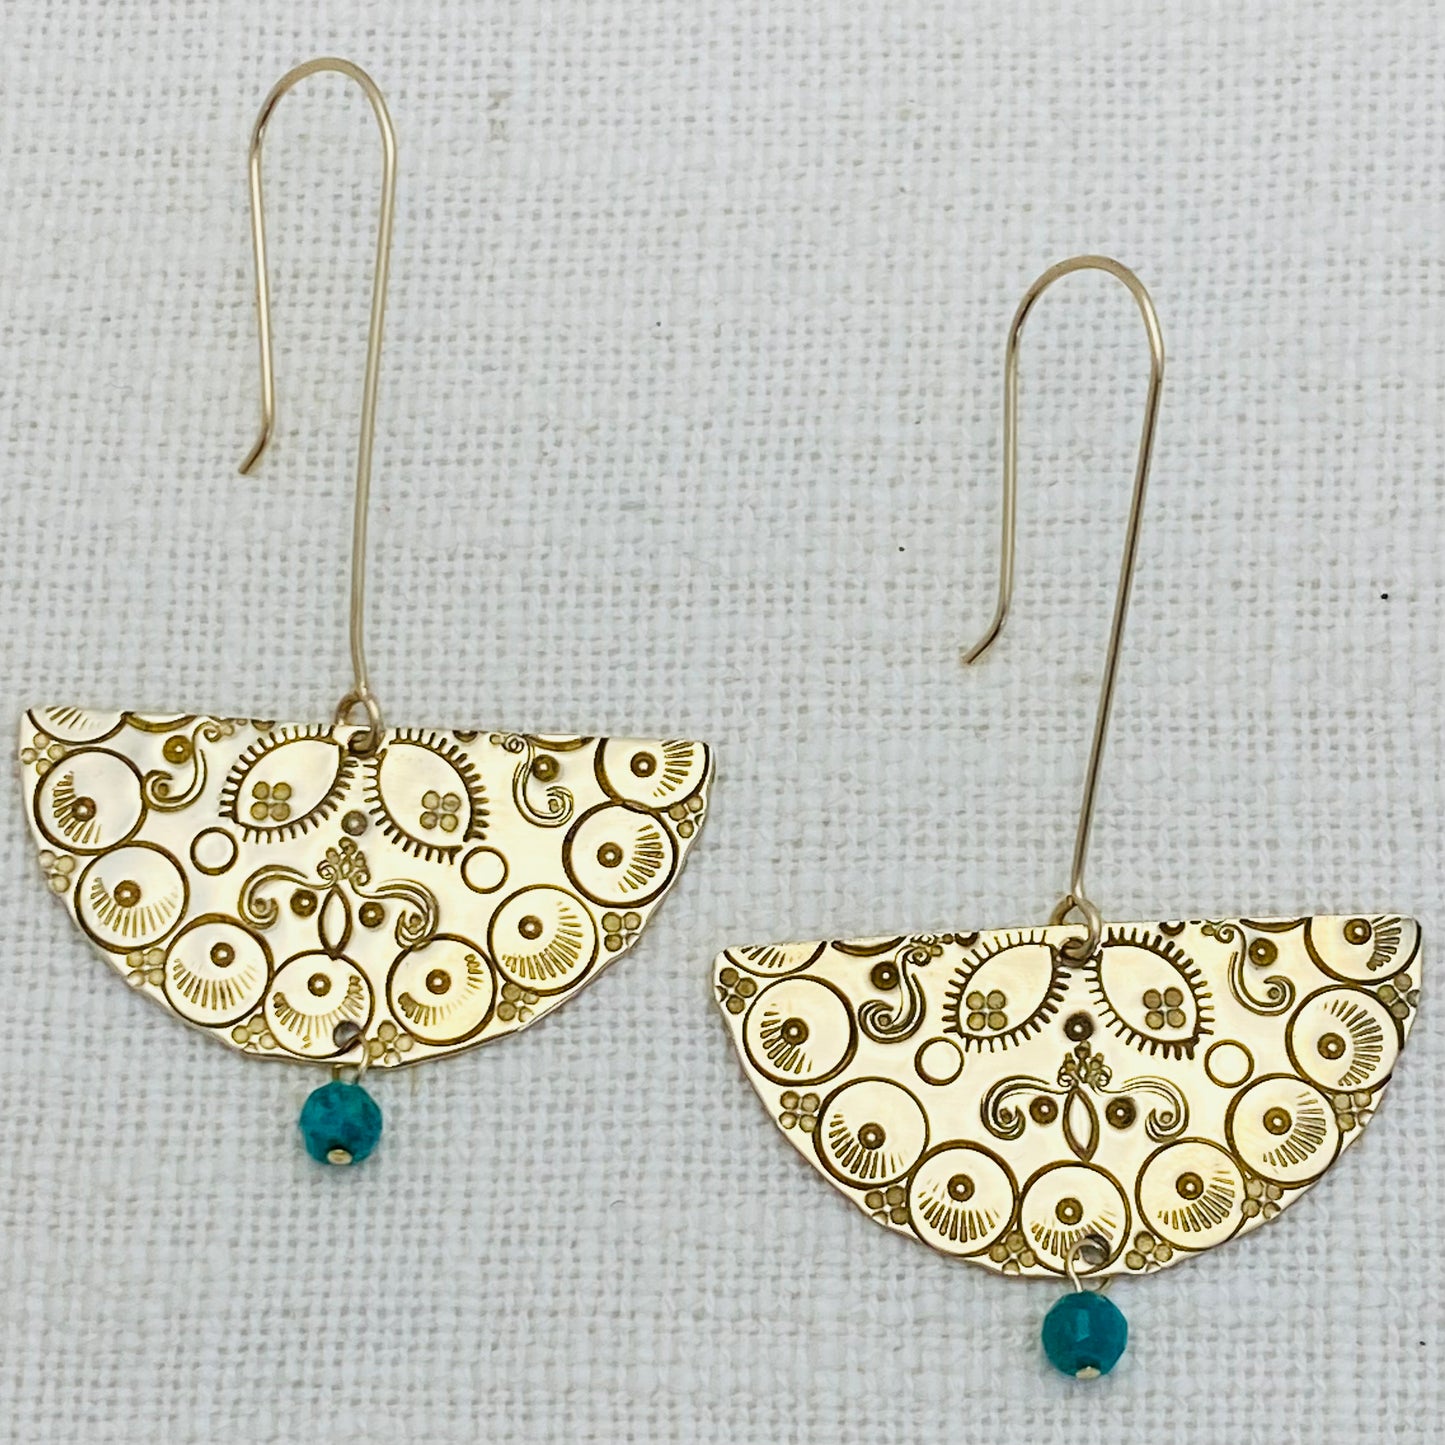 Half Mandala Earrings with Turquoise